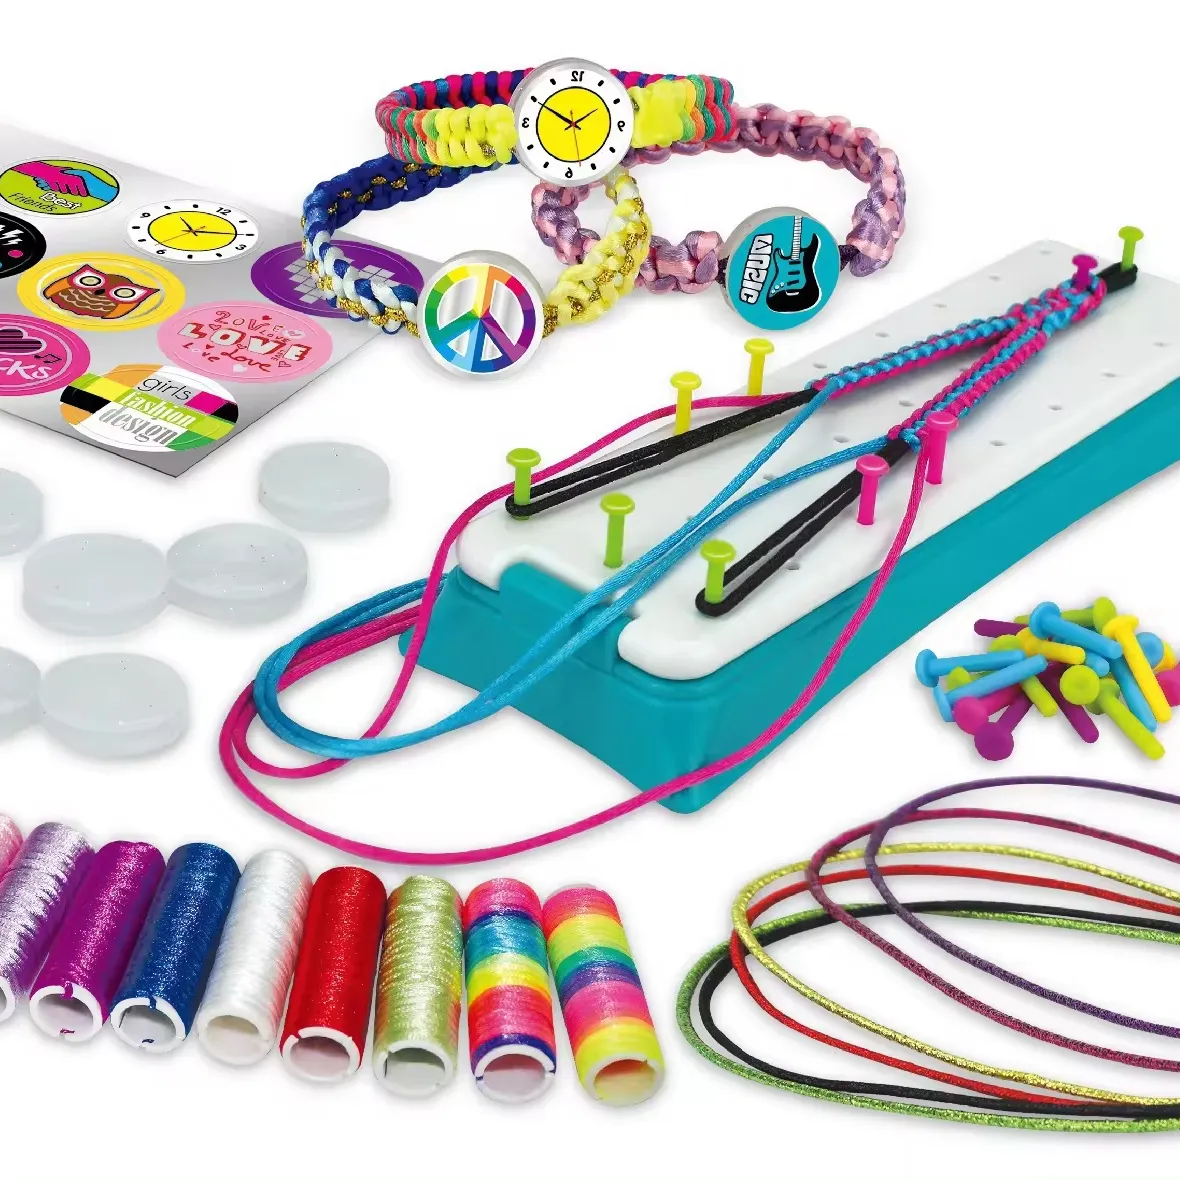 Kit de brincadeiras DIY para crianças, brindes de aniversário e Natal, brinquedos e pulseiras de amizade, faça você mesmo